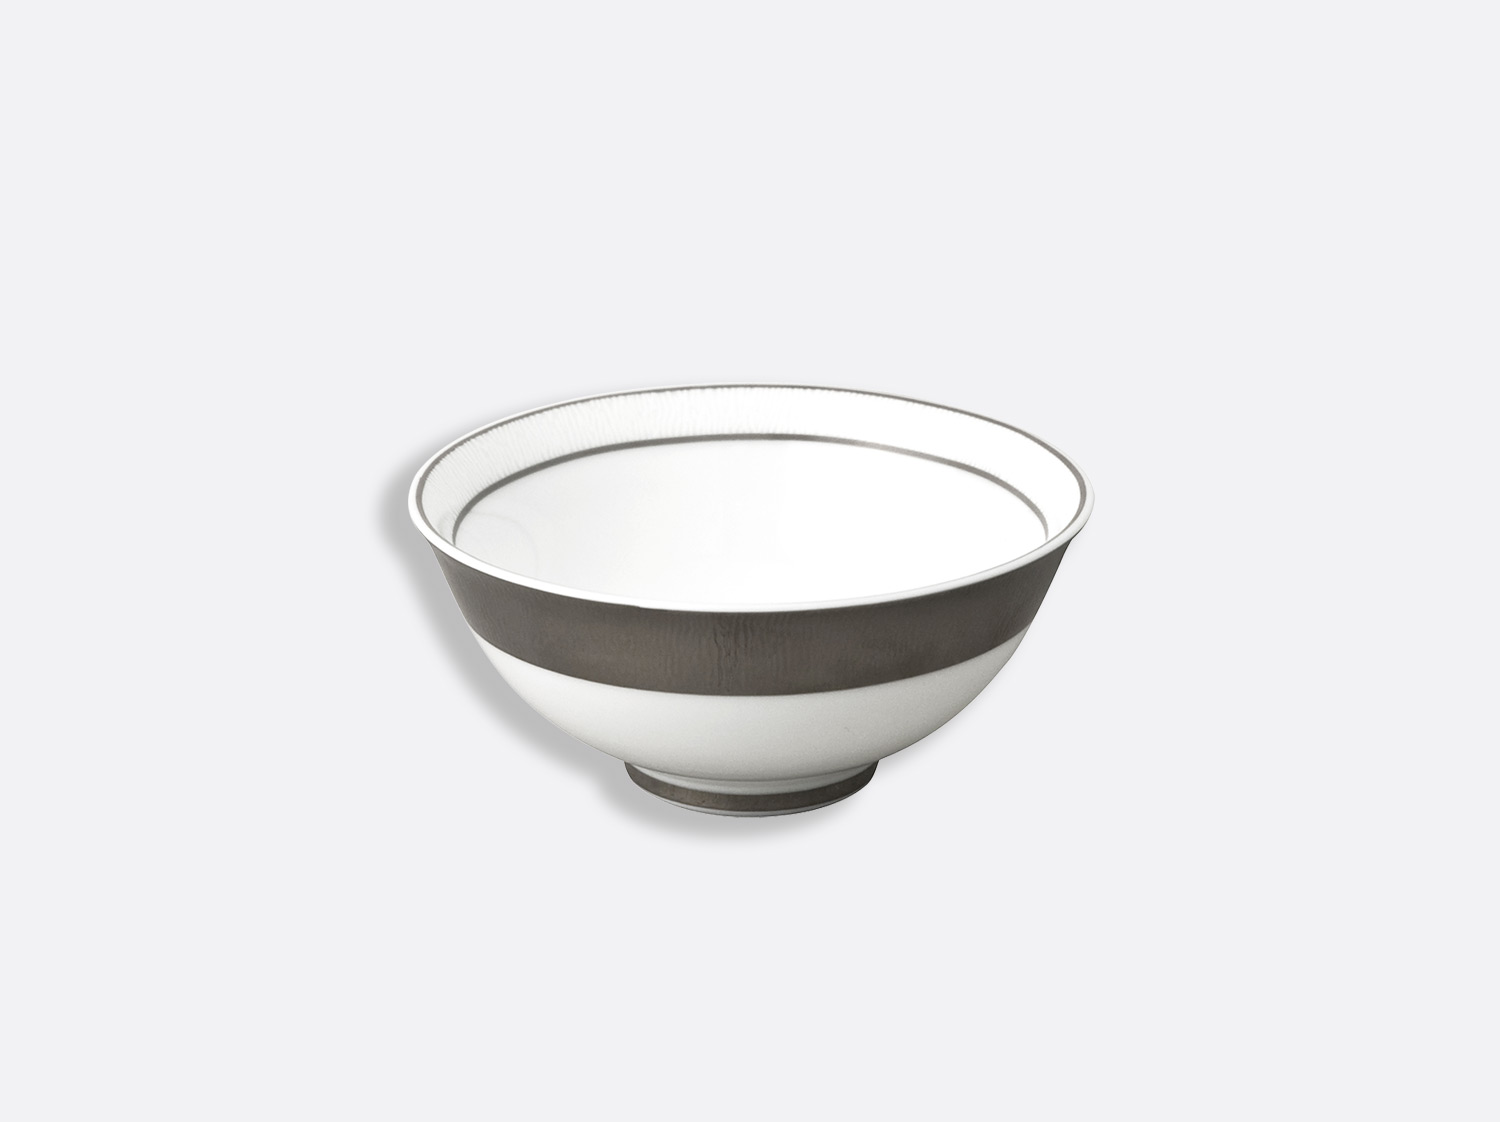 China Rice bowl 5" of the collection Dune | Bernardaud